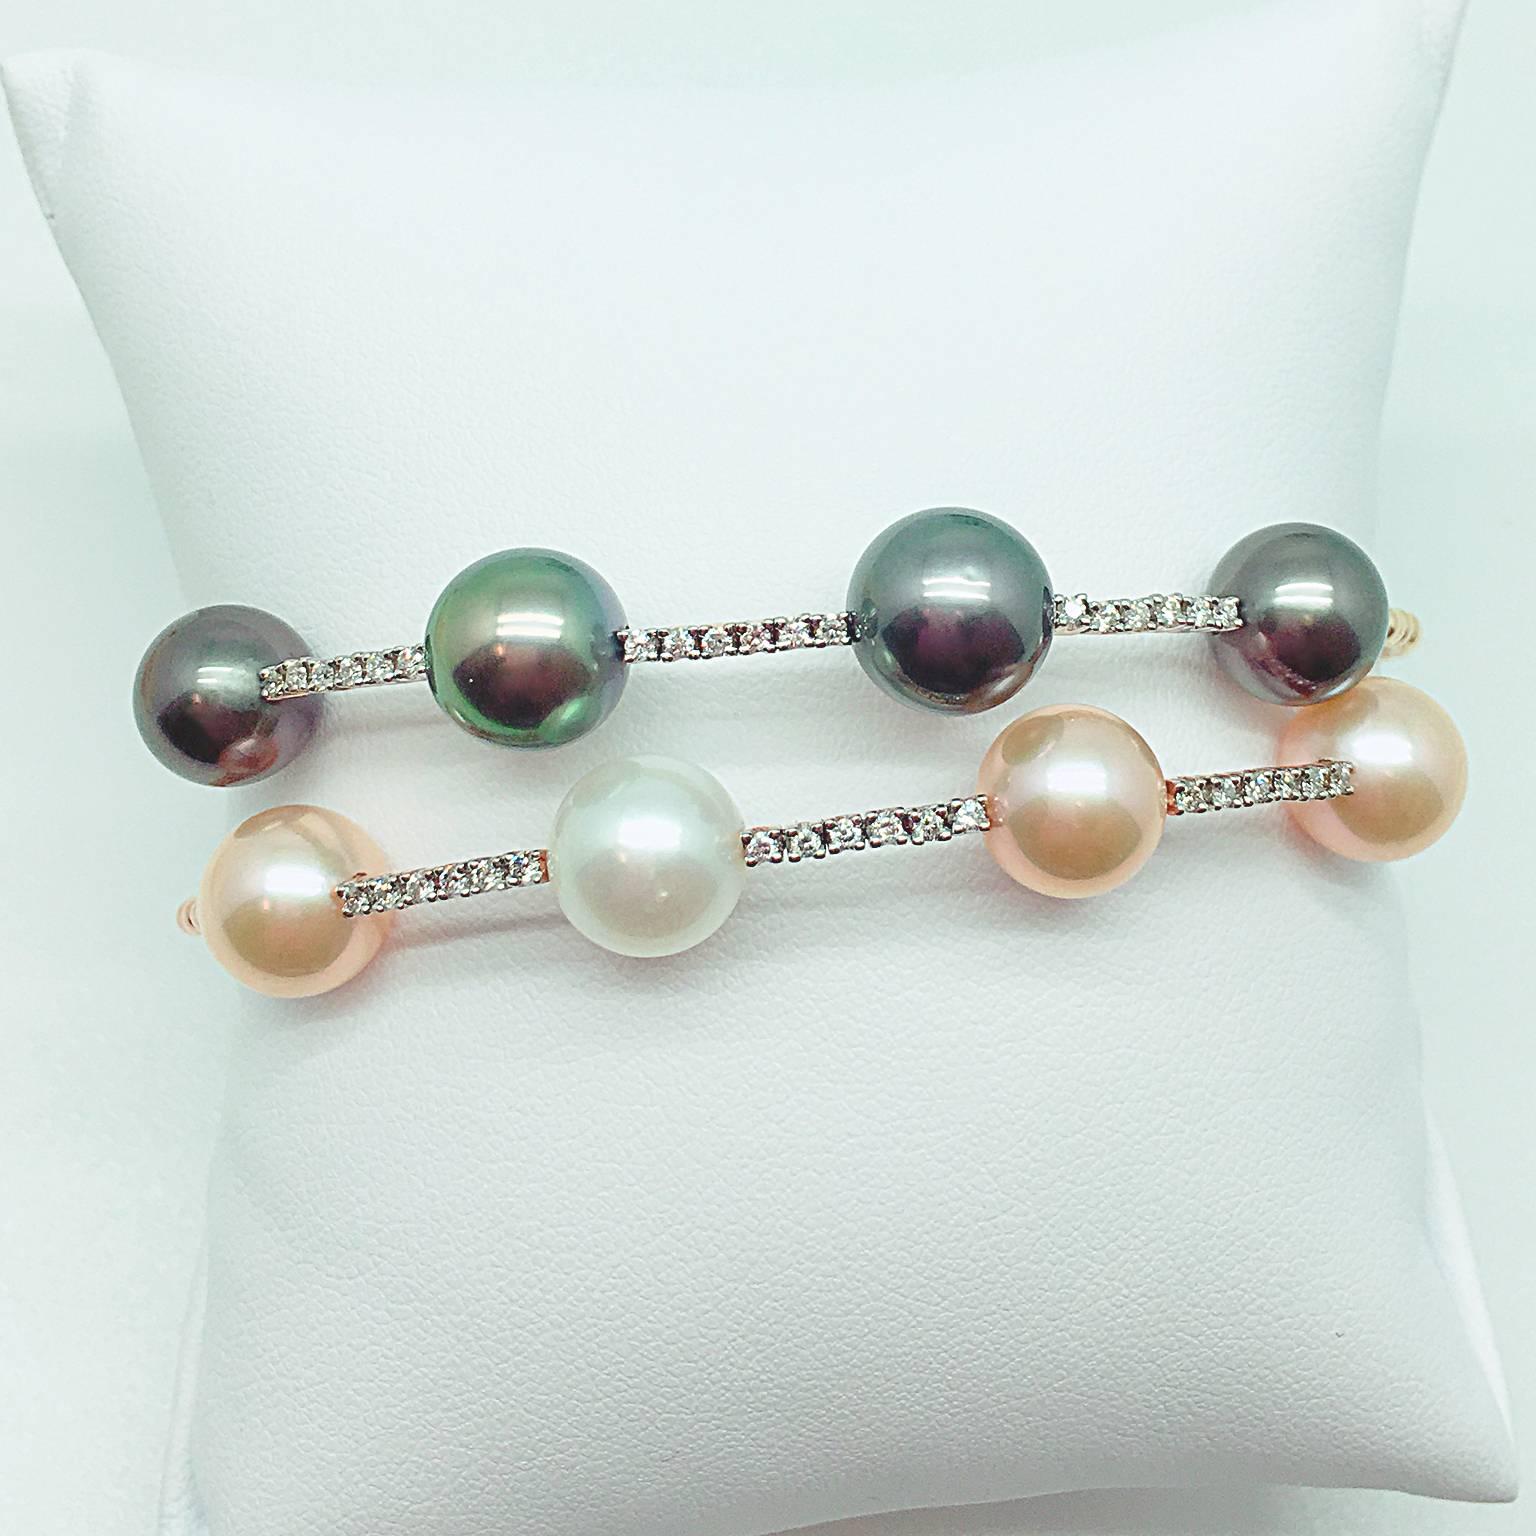 Perles de Tahiti : 9.04, 9.55, 9.42 et 9.00mm
Diamant blanc : 0,18 carat
Serti en or jaune 18K.

Un bracelet assorti avec des perles blanches de mer du Sud et des perles d'eau douce est également disponible.